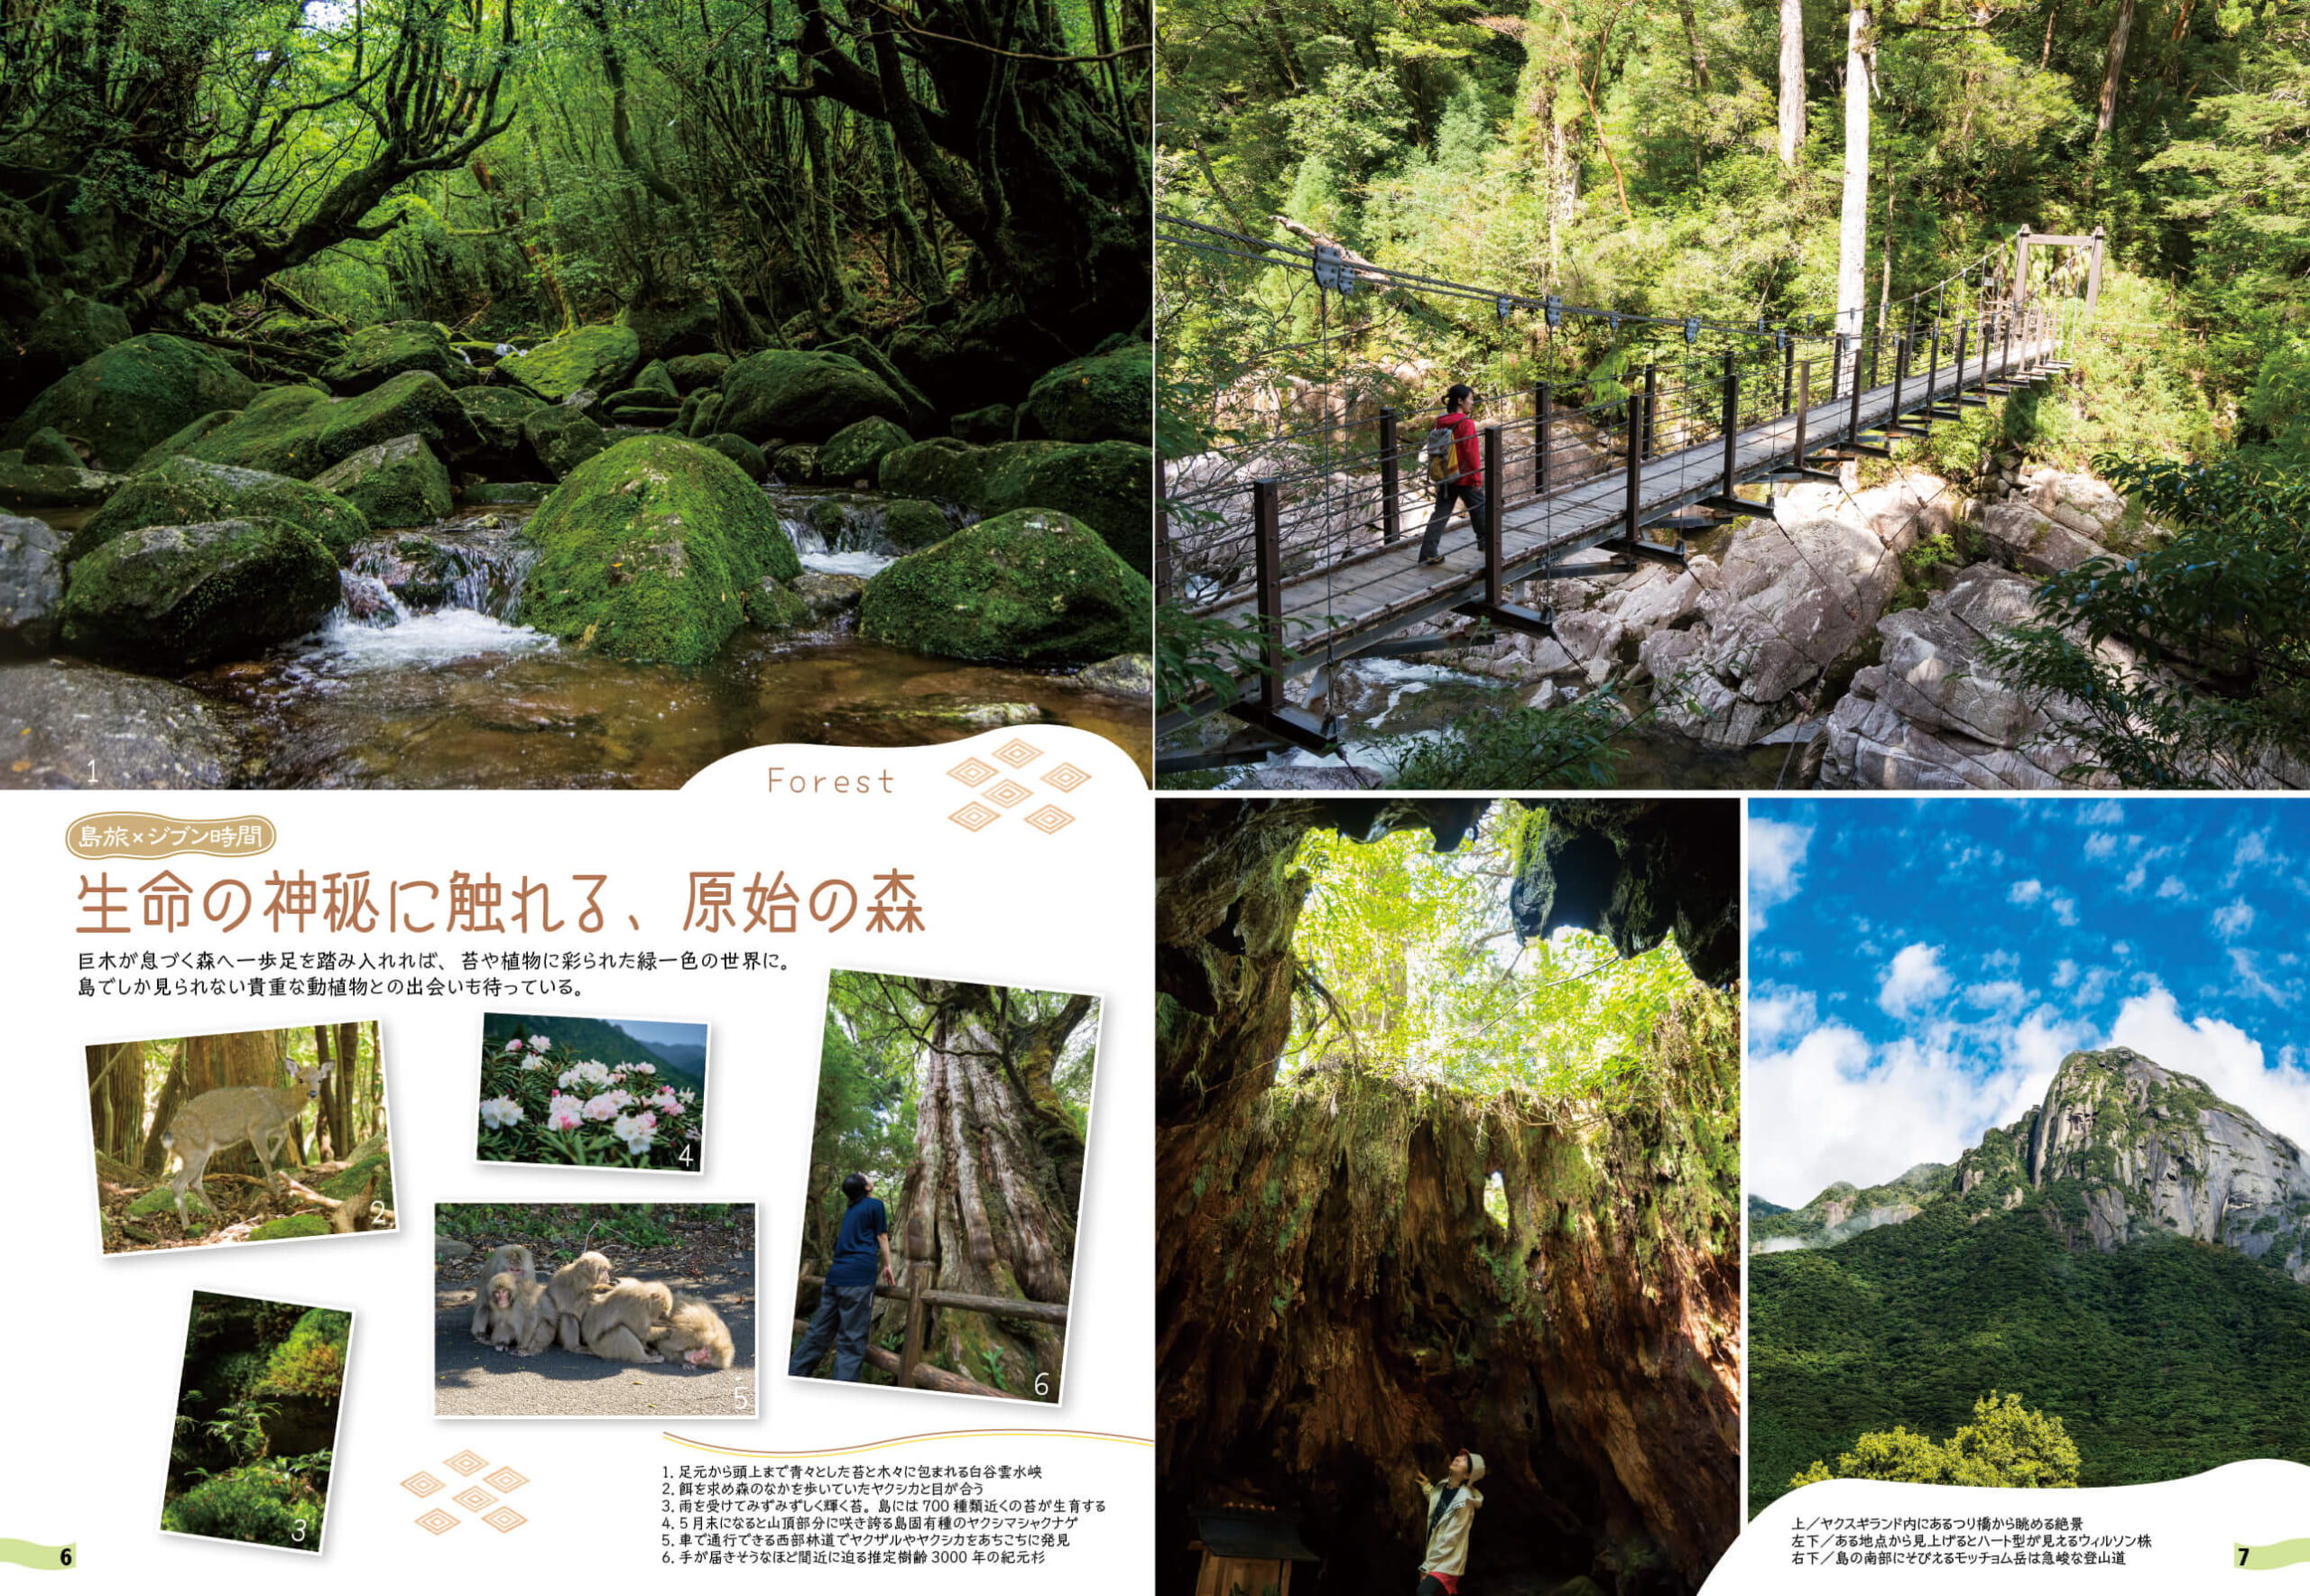 「一生に一度は歩いてみたい、心があらわれる屋久島の森の魅力を紹介します」紙面